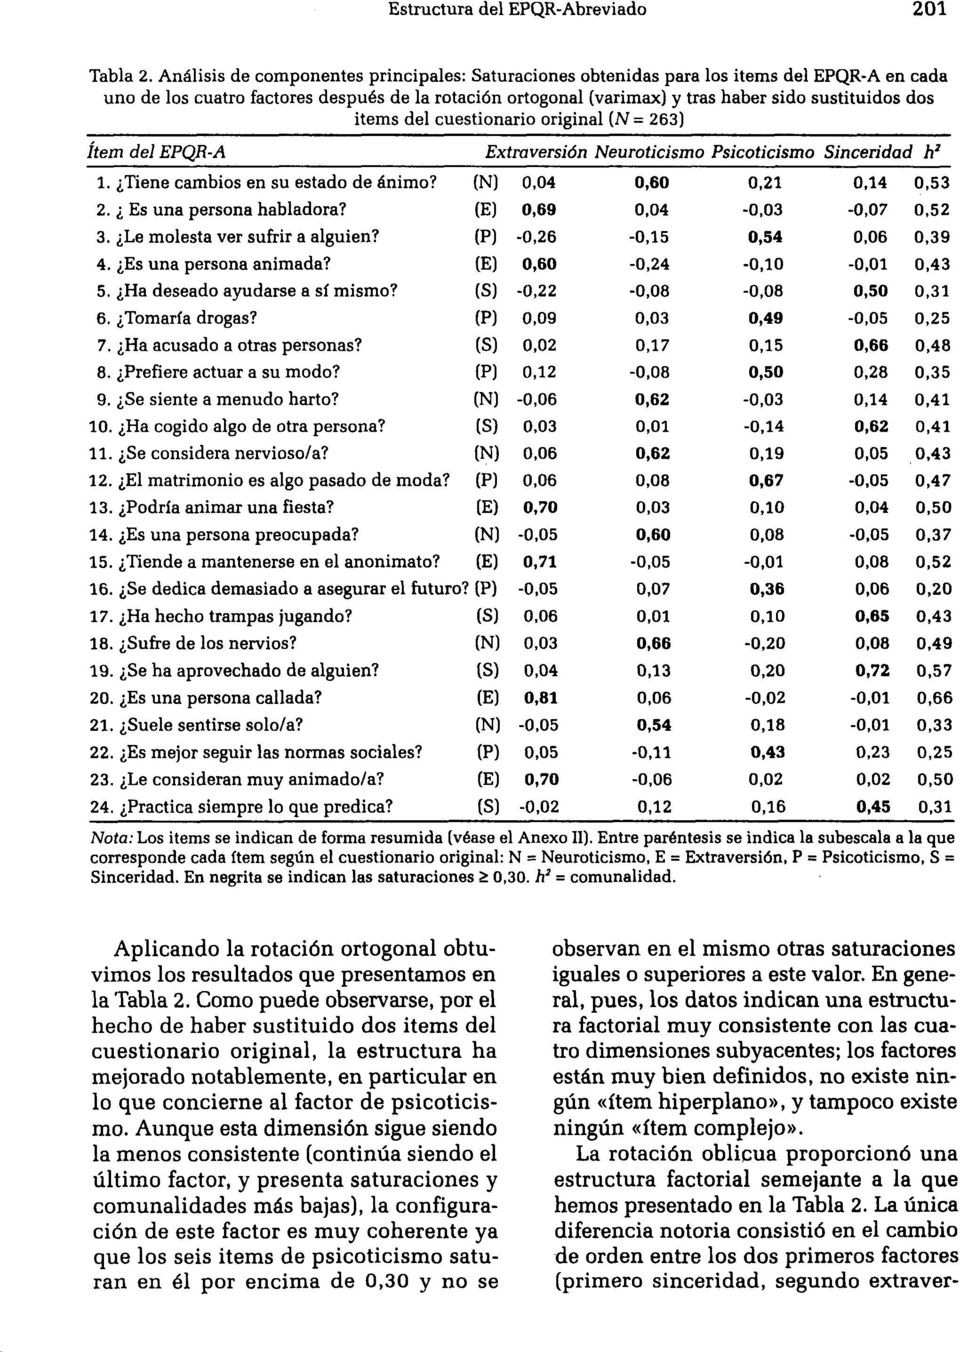 items del cuestionario original (= 263) ítem del QR-A xtraversión euroticismo sicoticismo inceridad h' 1. Tiene cambios en su estado de ánimo? () 0,04 0,60 0,21 0,14 0,53 2. s una persona habladora?